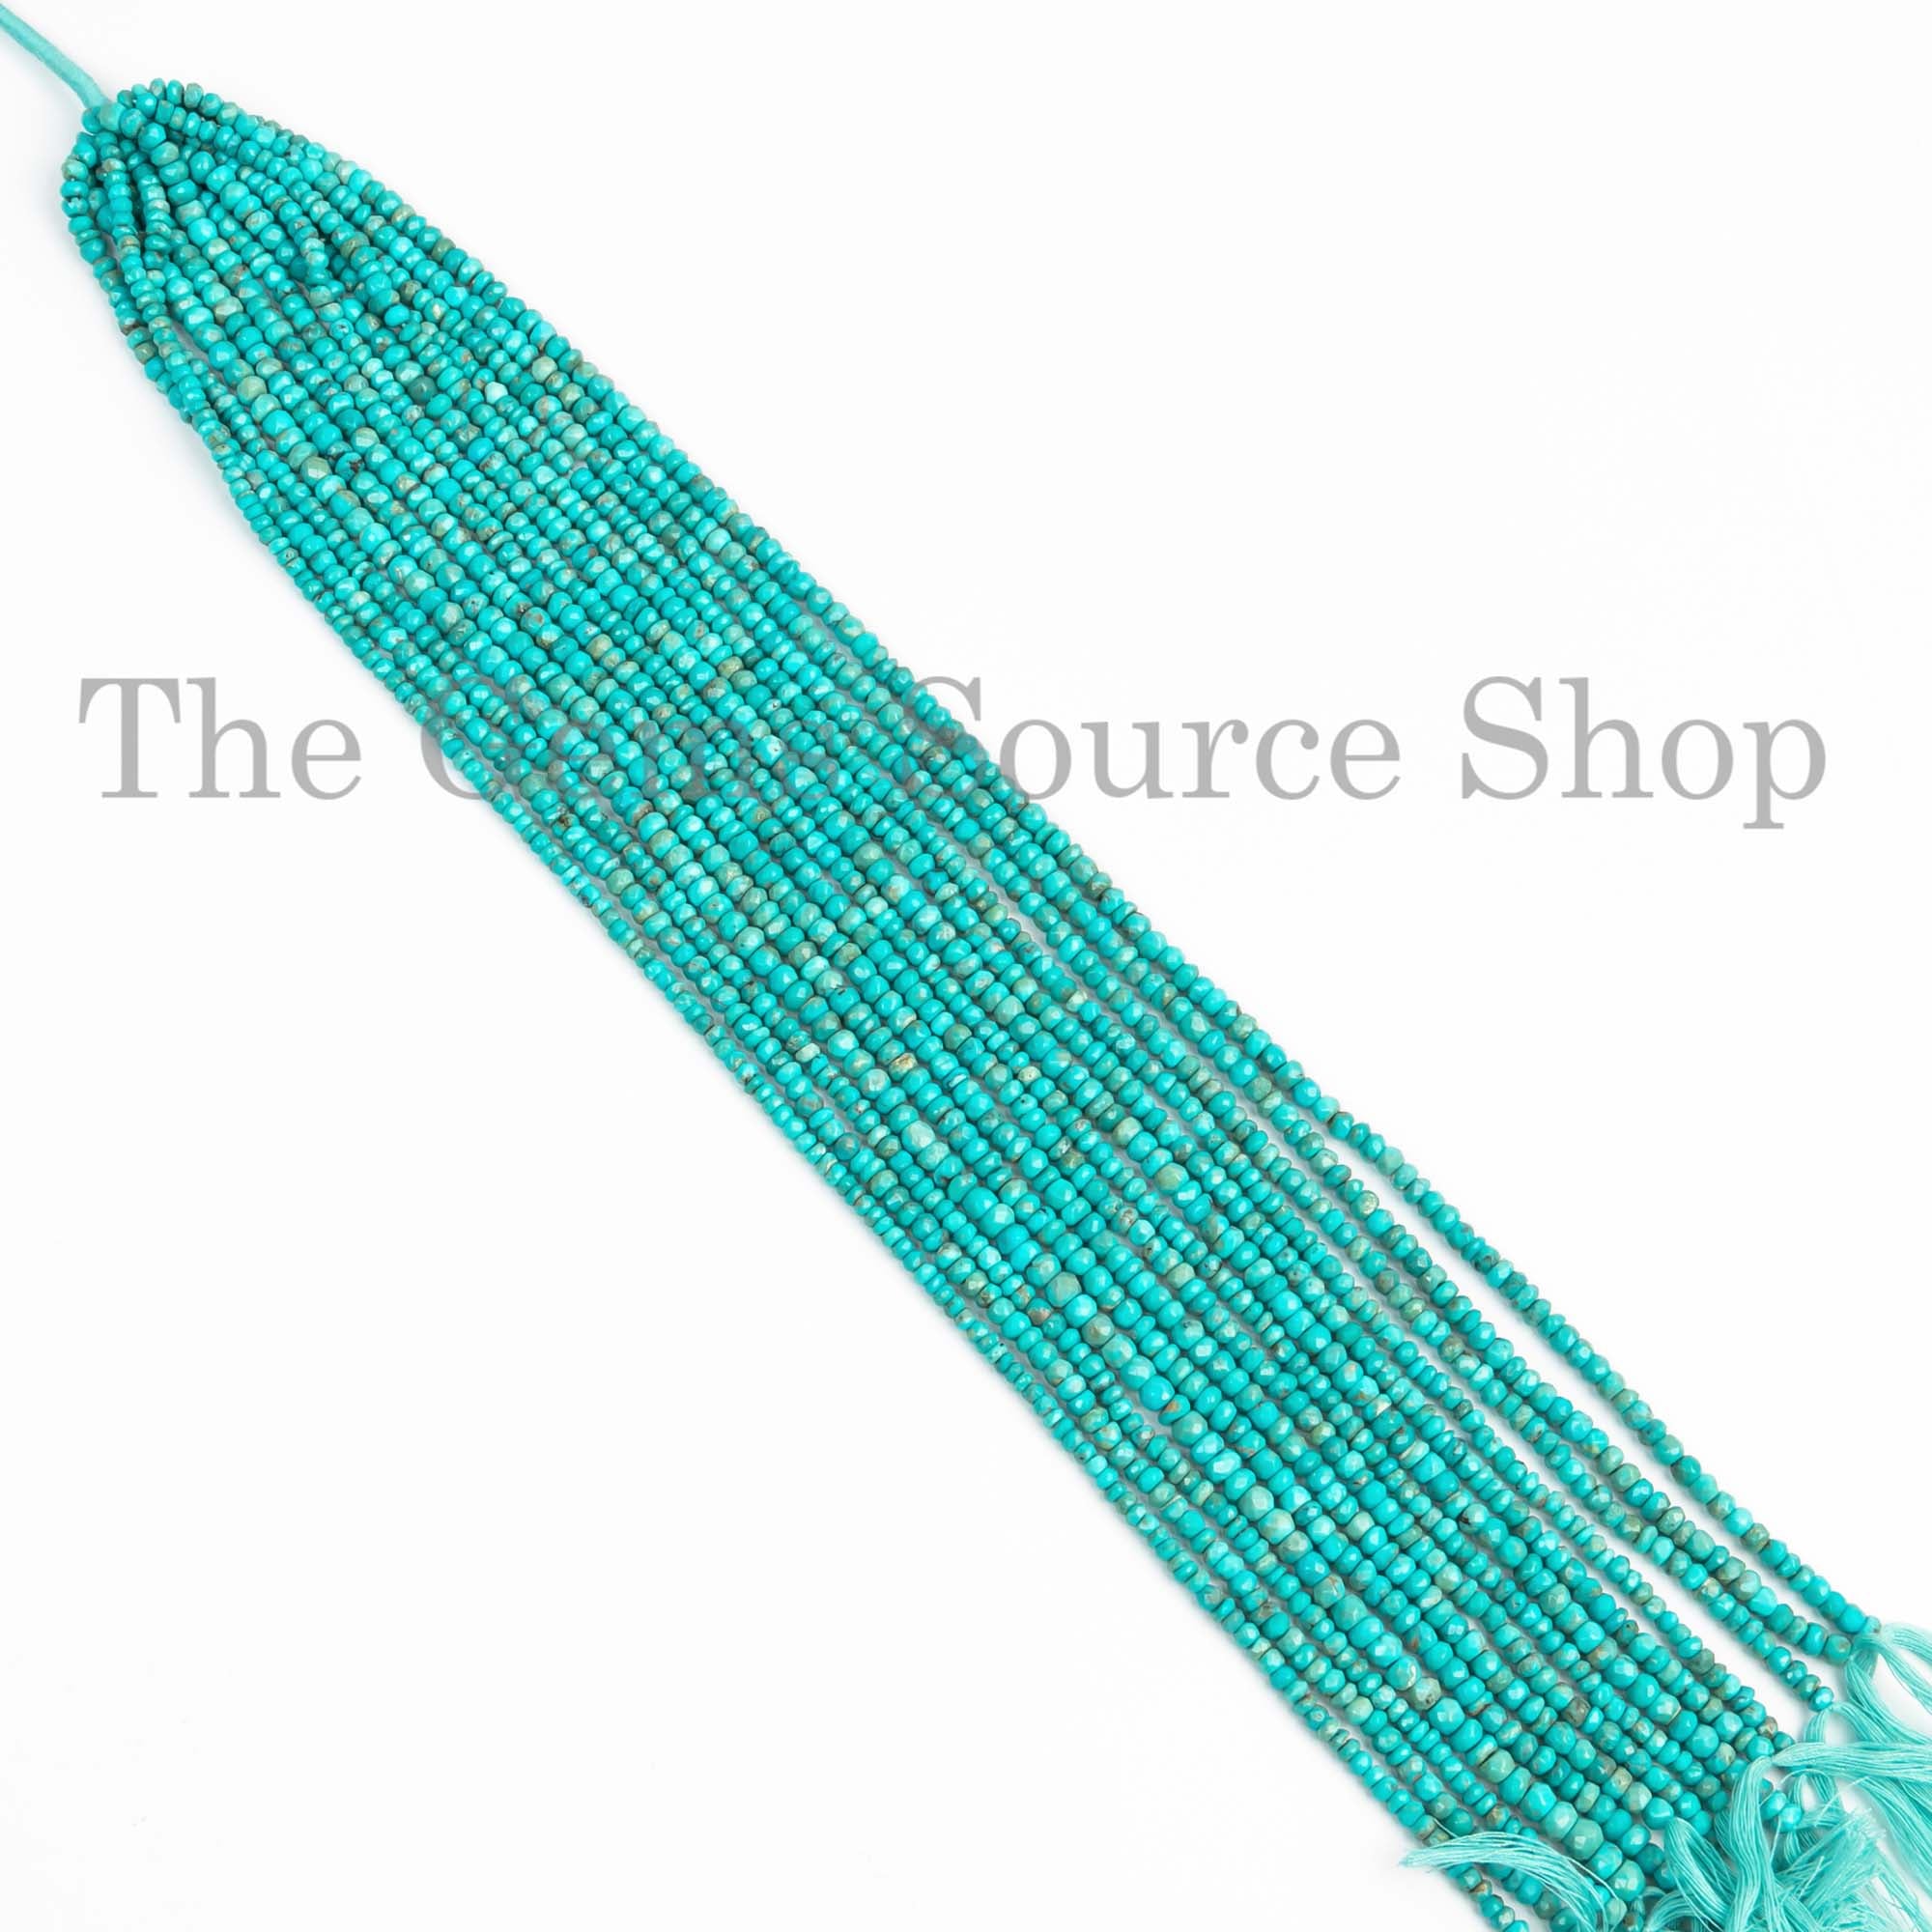 Sleeping Beauty Turquoise Beads, Turquoise Faceted Beads, Turquoise Rondelle Beads, Gemstone Beads